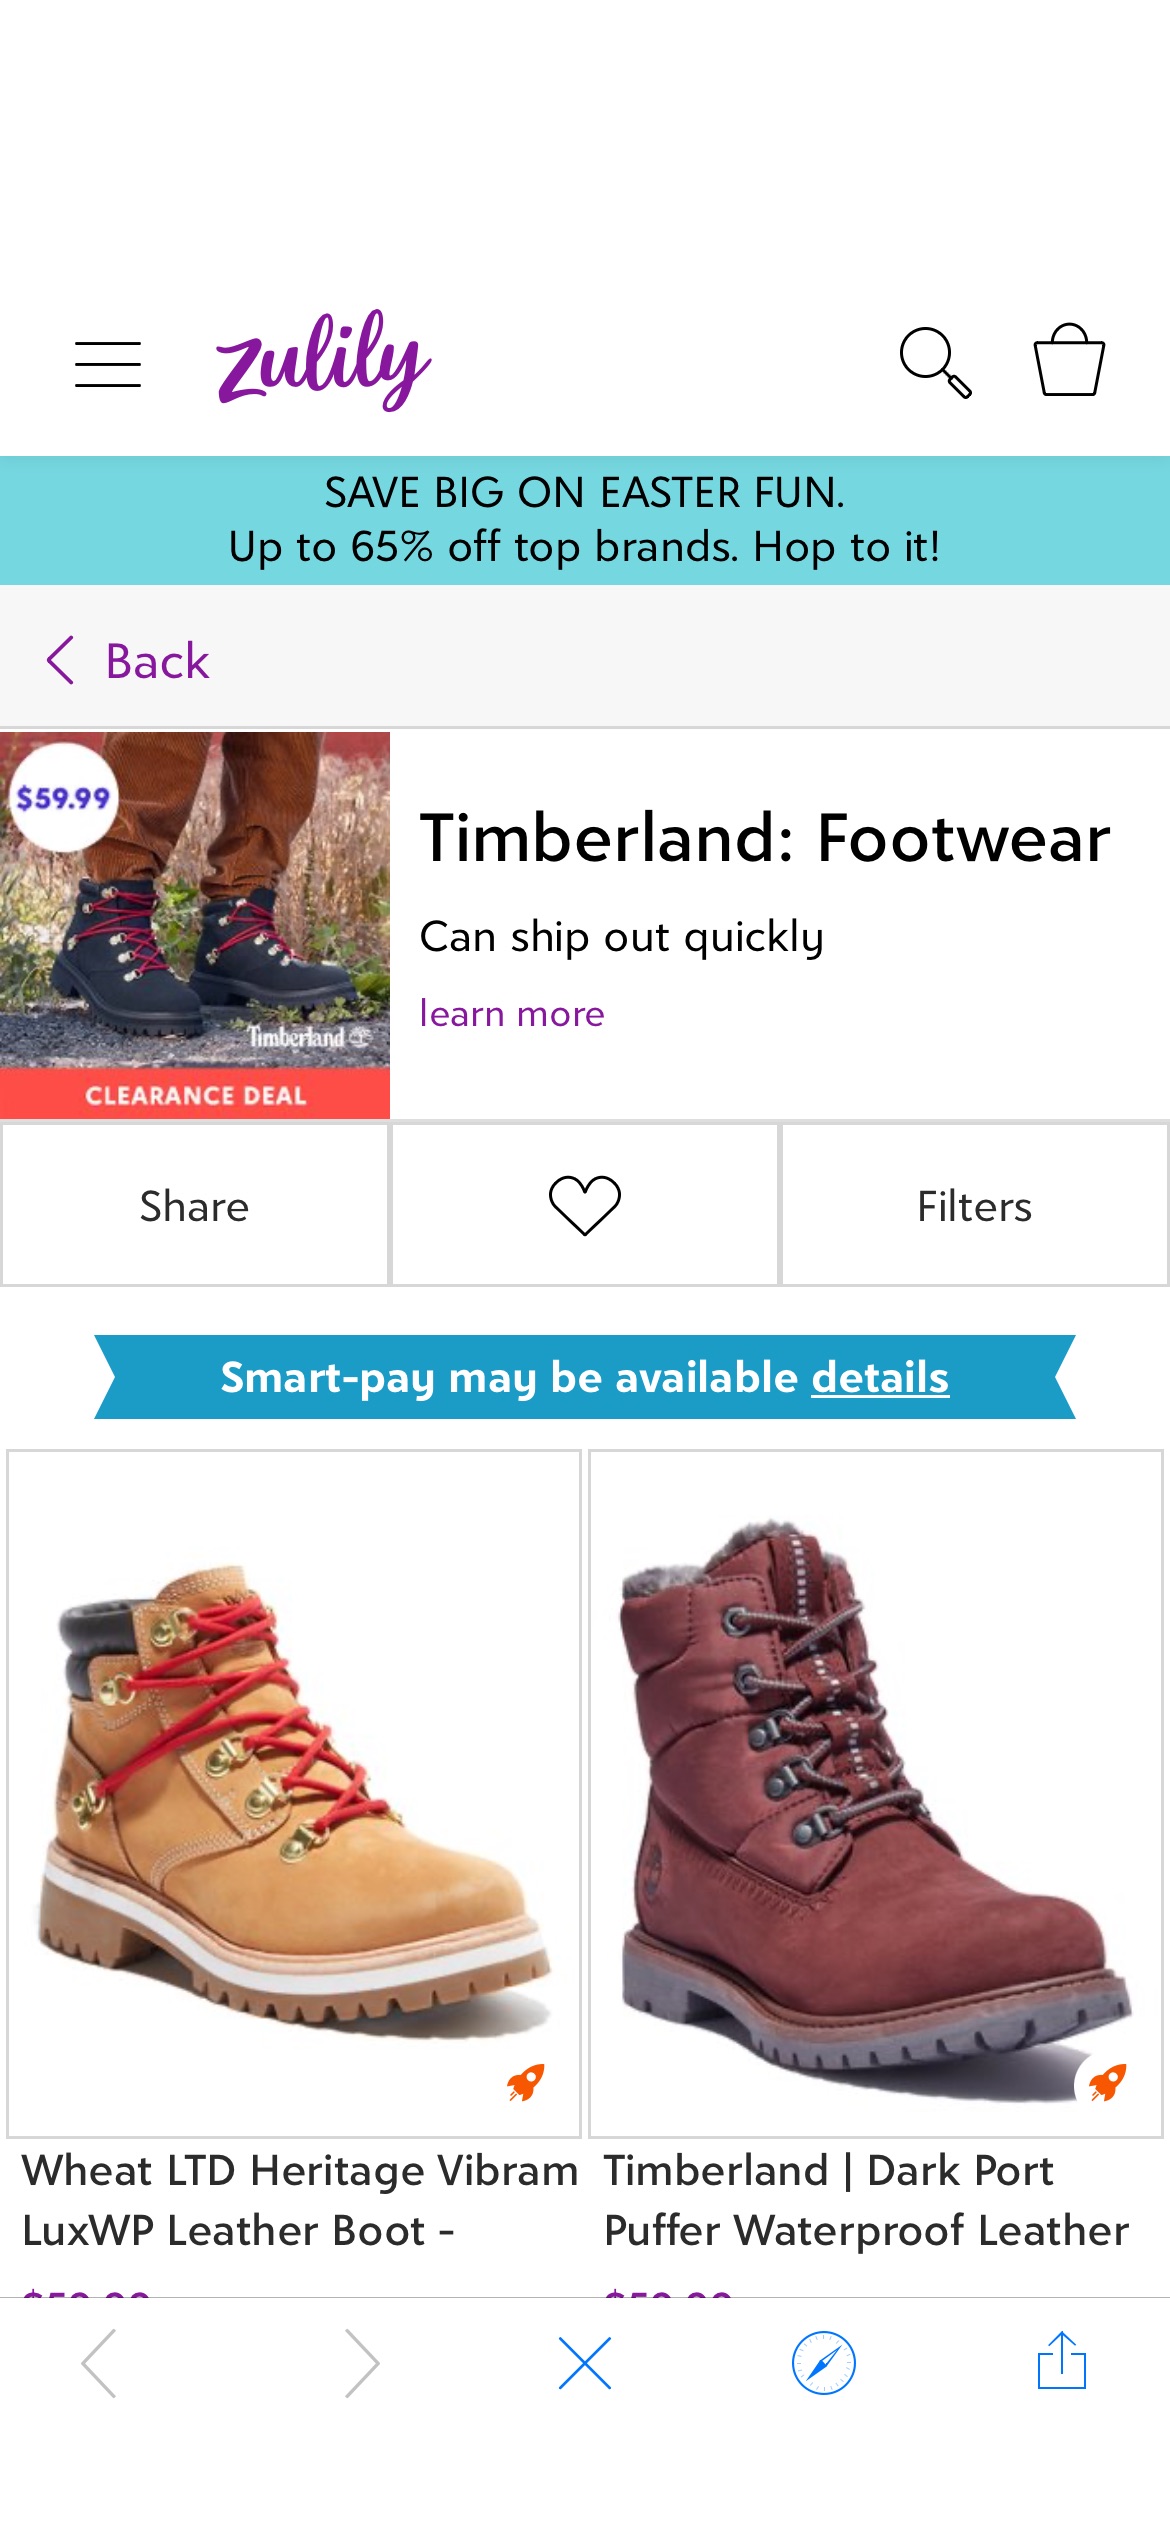 Timberland: Footwear | Zulily一律59.99